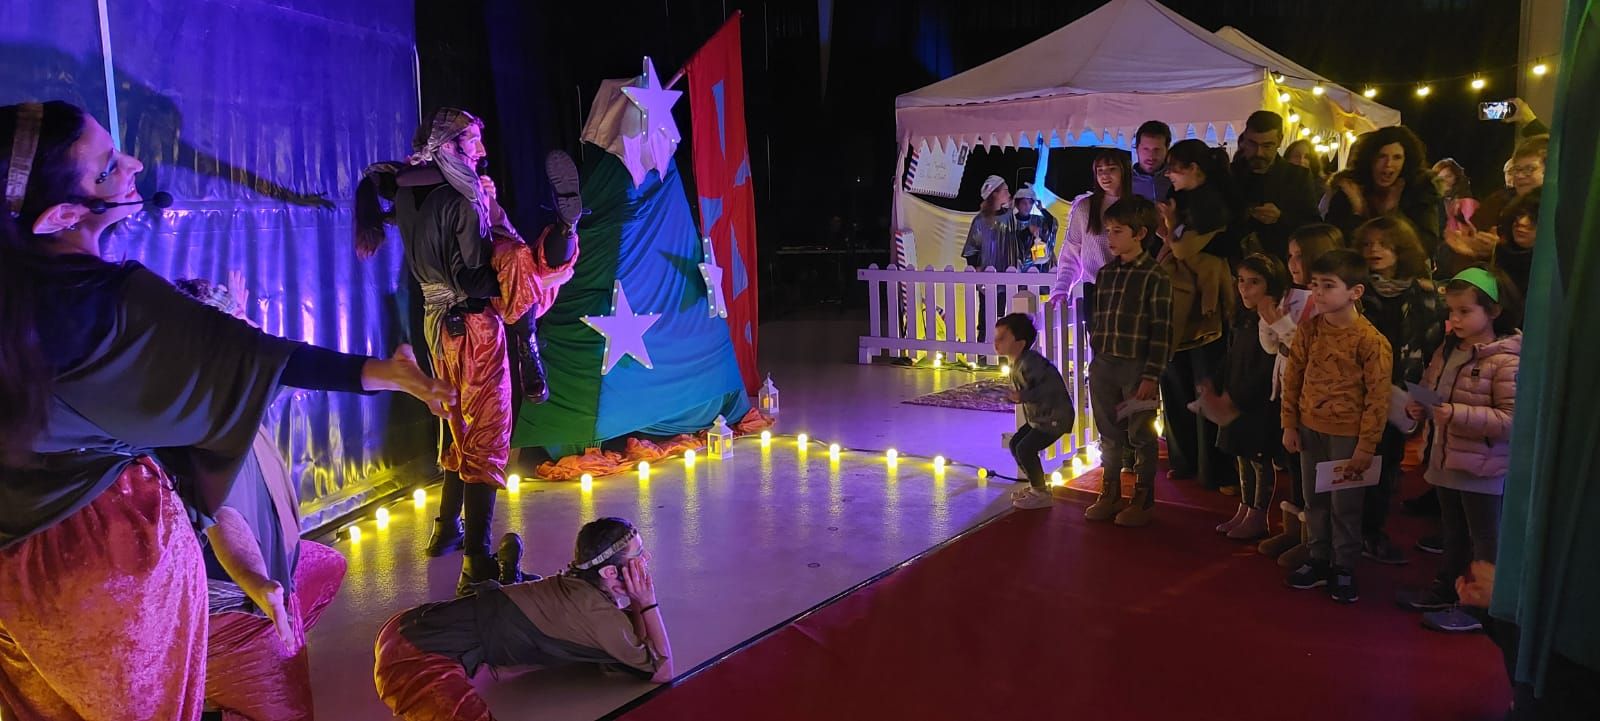 Els patges reials arriben a Solsona acompanyats per un espectacle infantil